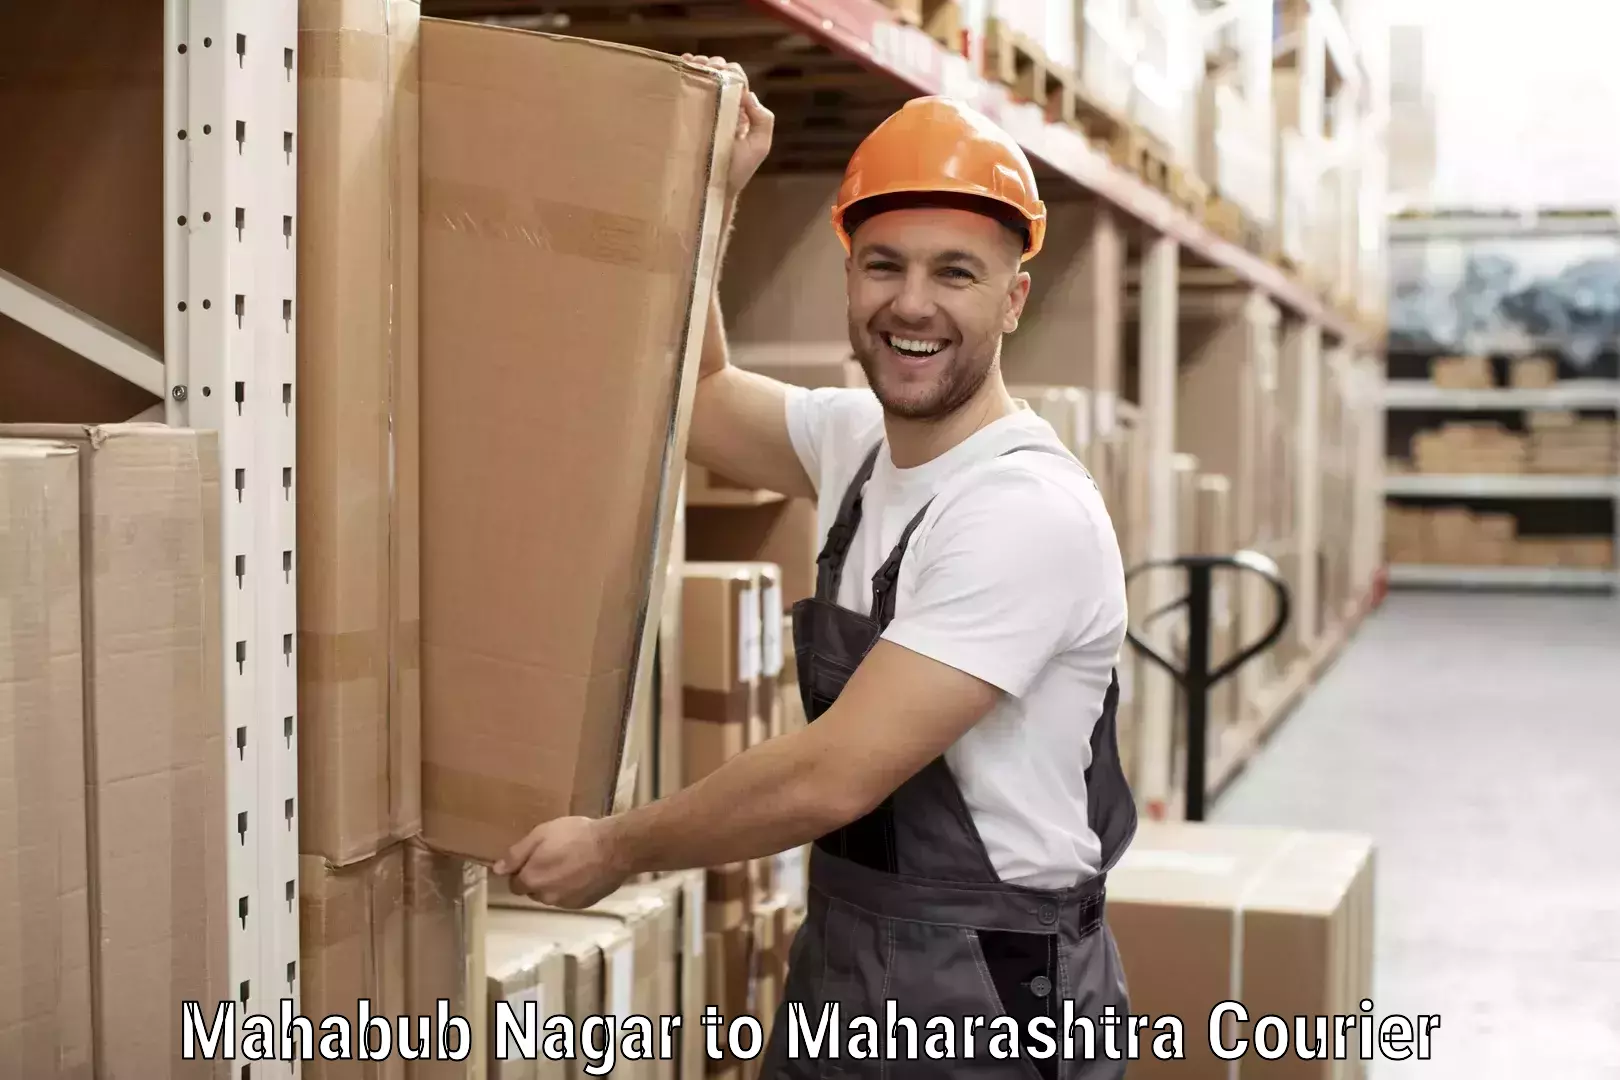 Reliable courier service Mahabub Nagar to Ballarpur